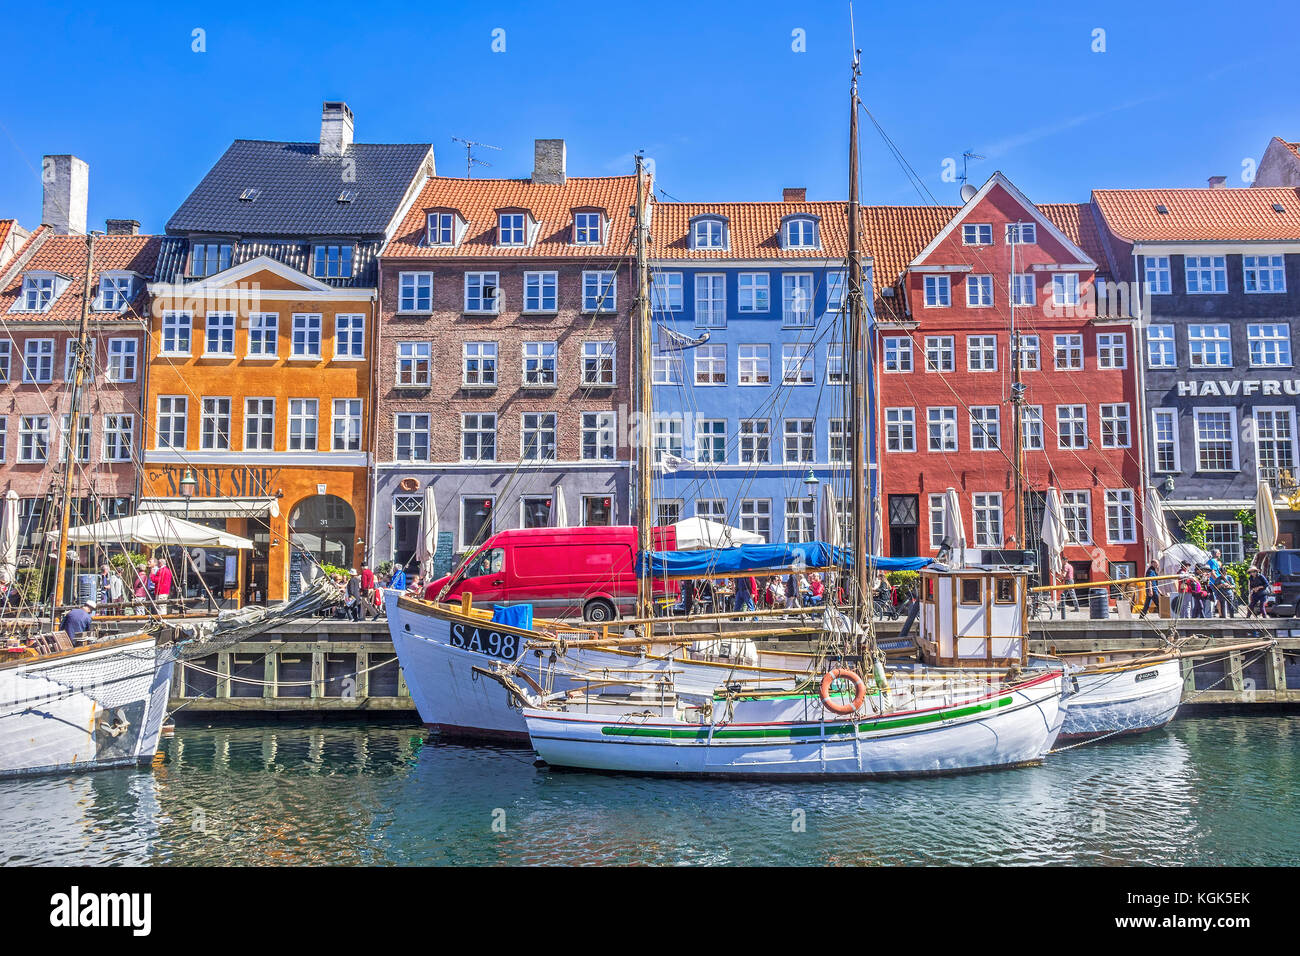 Bateaux dans le canal de Nyhavn nyhavn Copenhague Danemark Banque D'Images